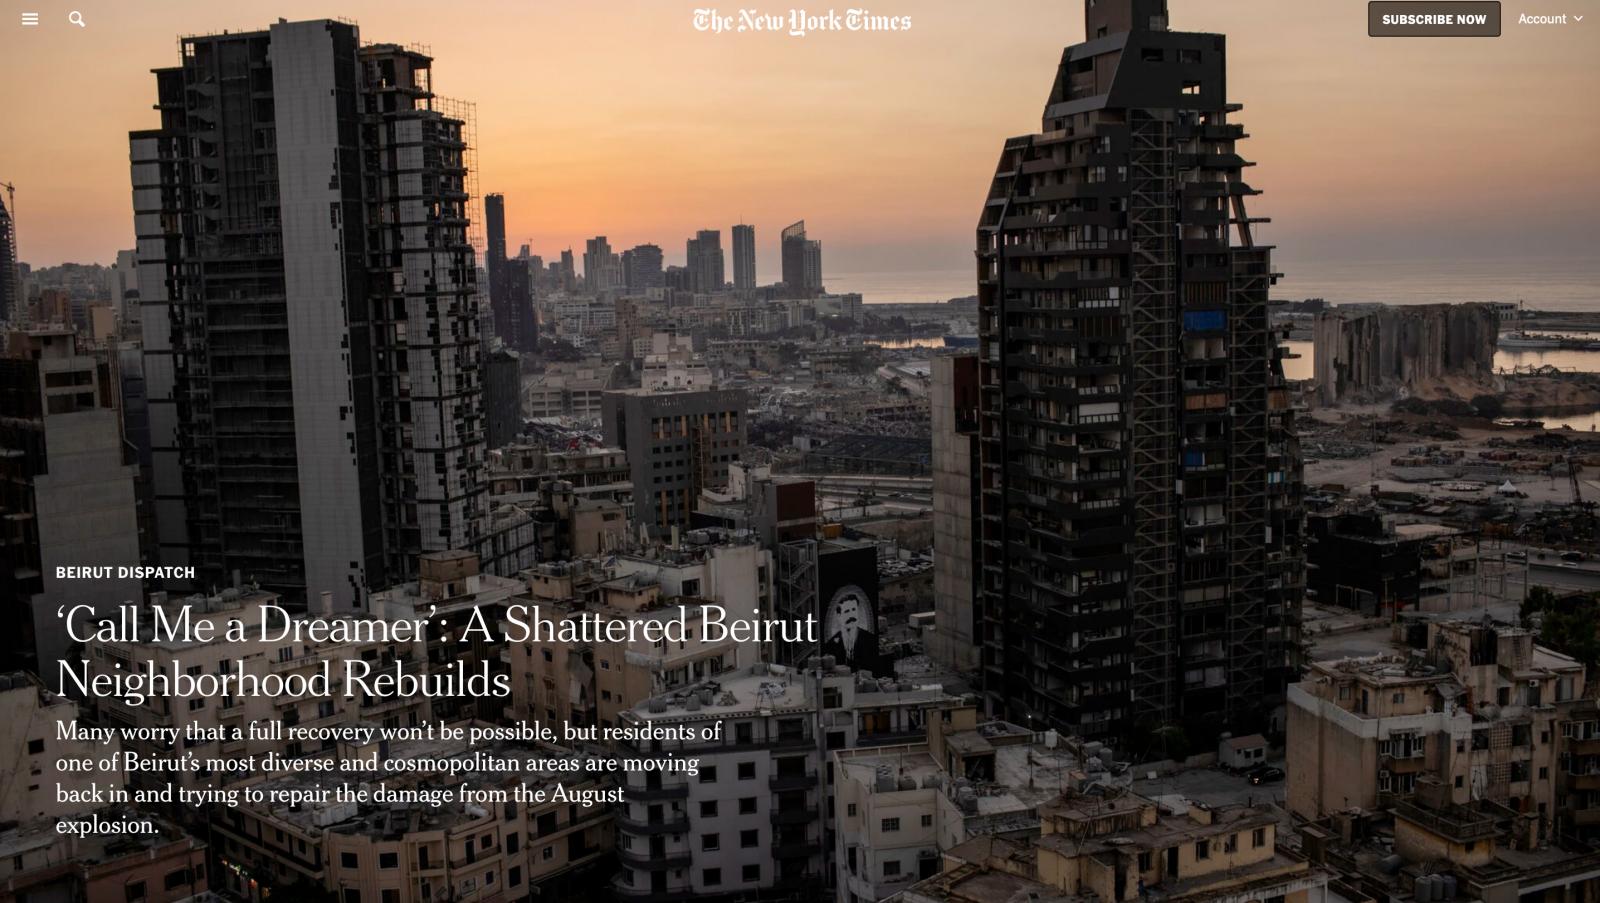 NYT: "˜Call Me a Dreamer': A Shattered Beirut Neighborhood Rebuilds